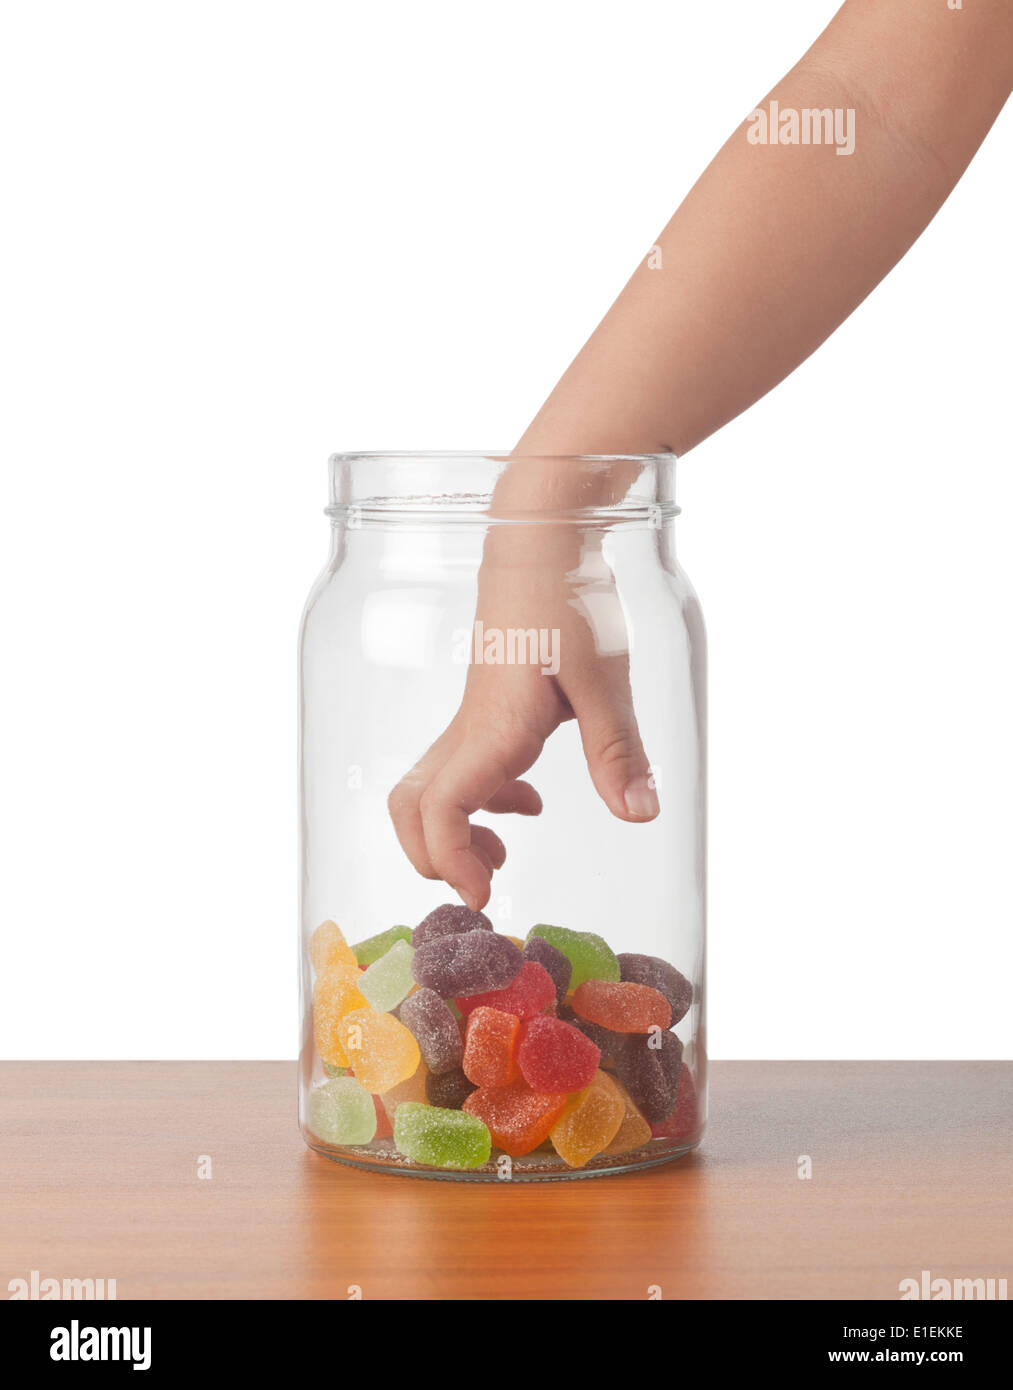 La mano del niño para llegar a tomar dulces de una jarra Foto de stock